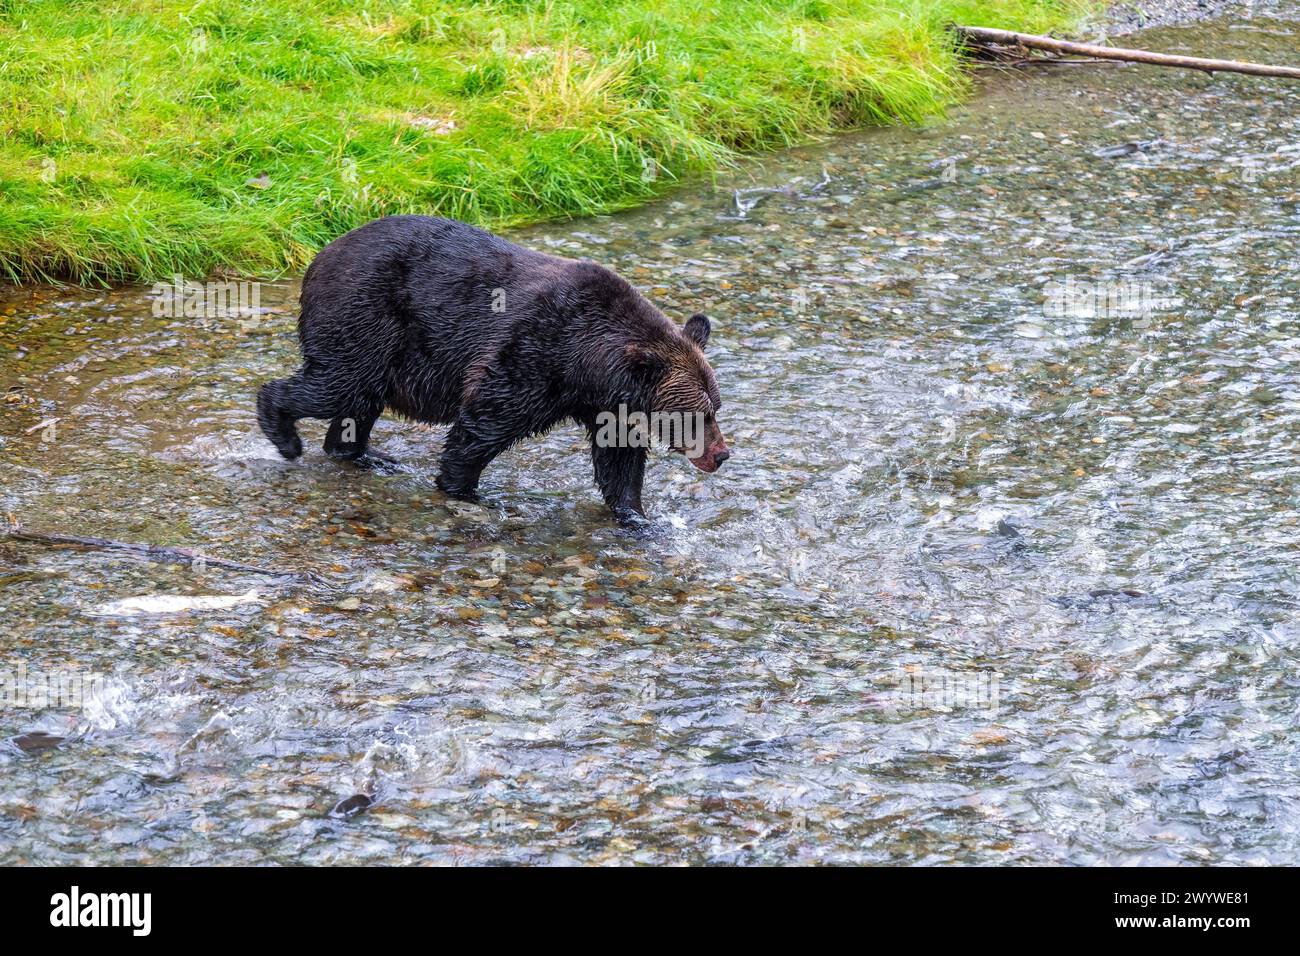 Grizzly bear (Ursus arctos horribilis) fishing salmon during salmon run, Fish Creek, Tongass national forest, Alaska, USA. Stock Photo